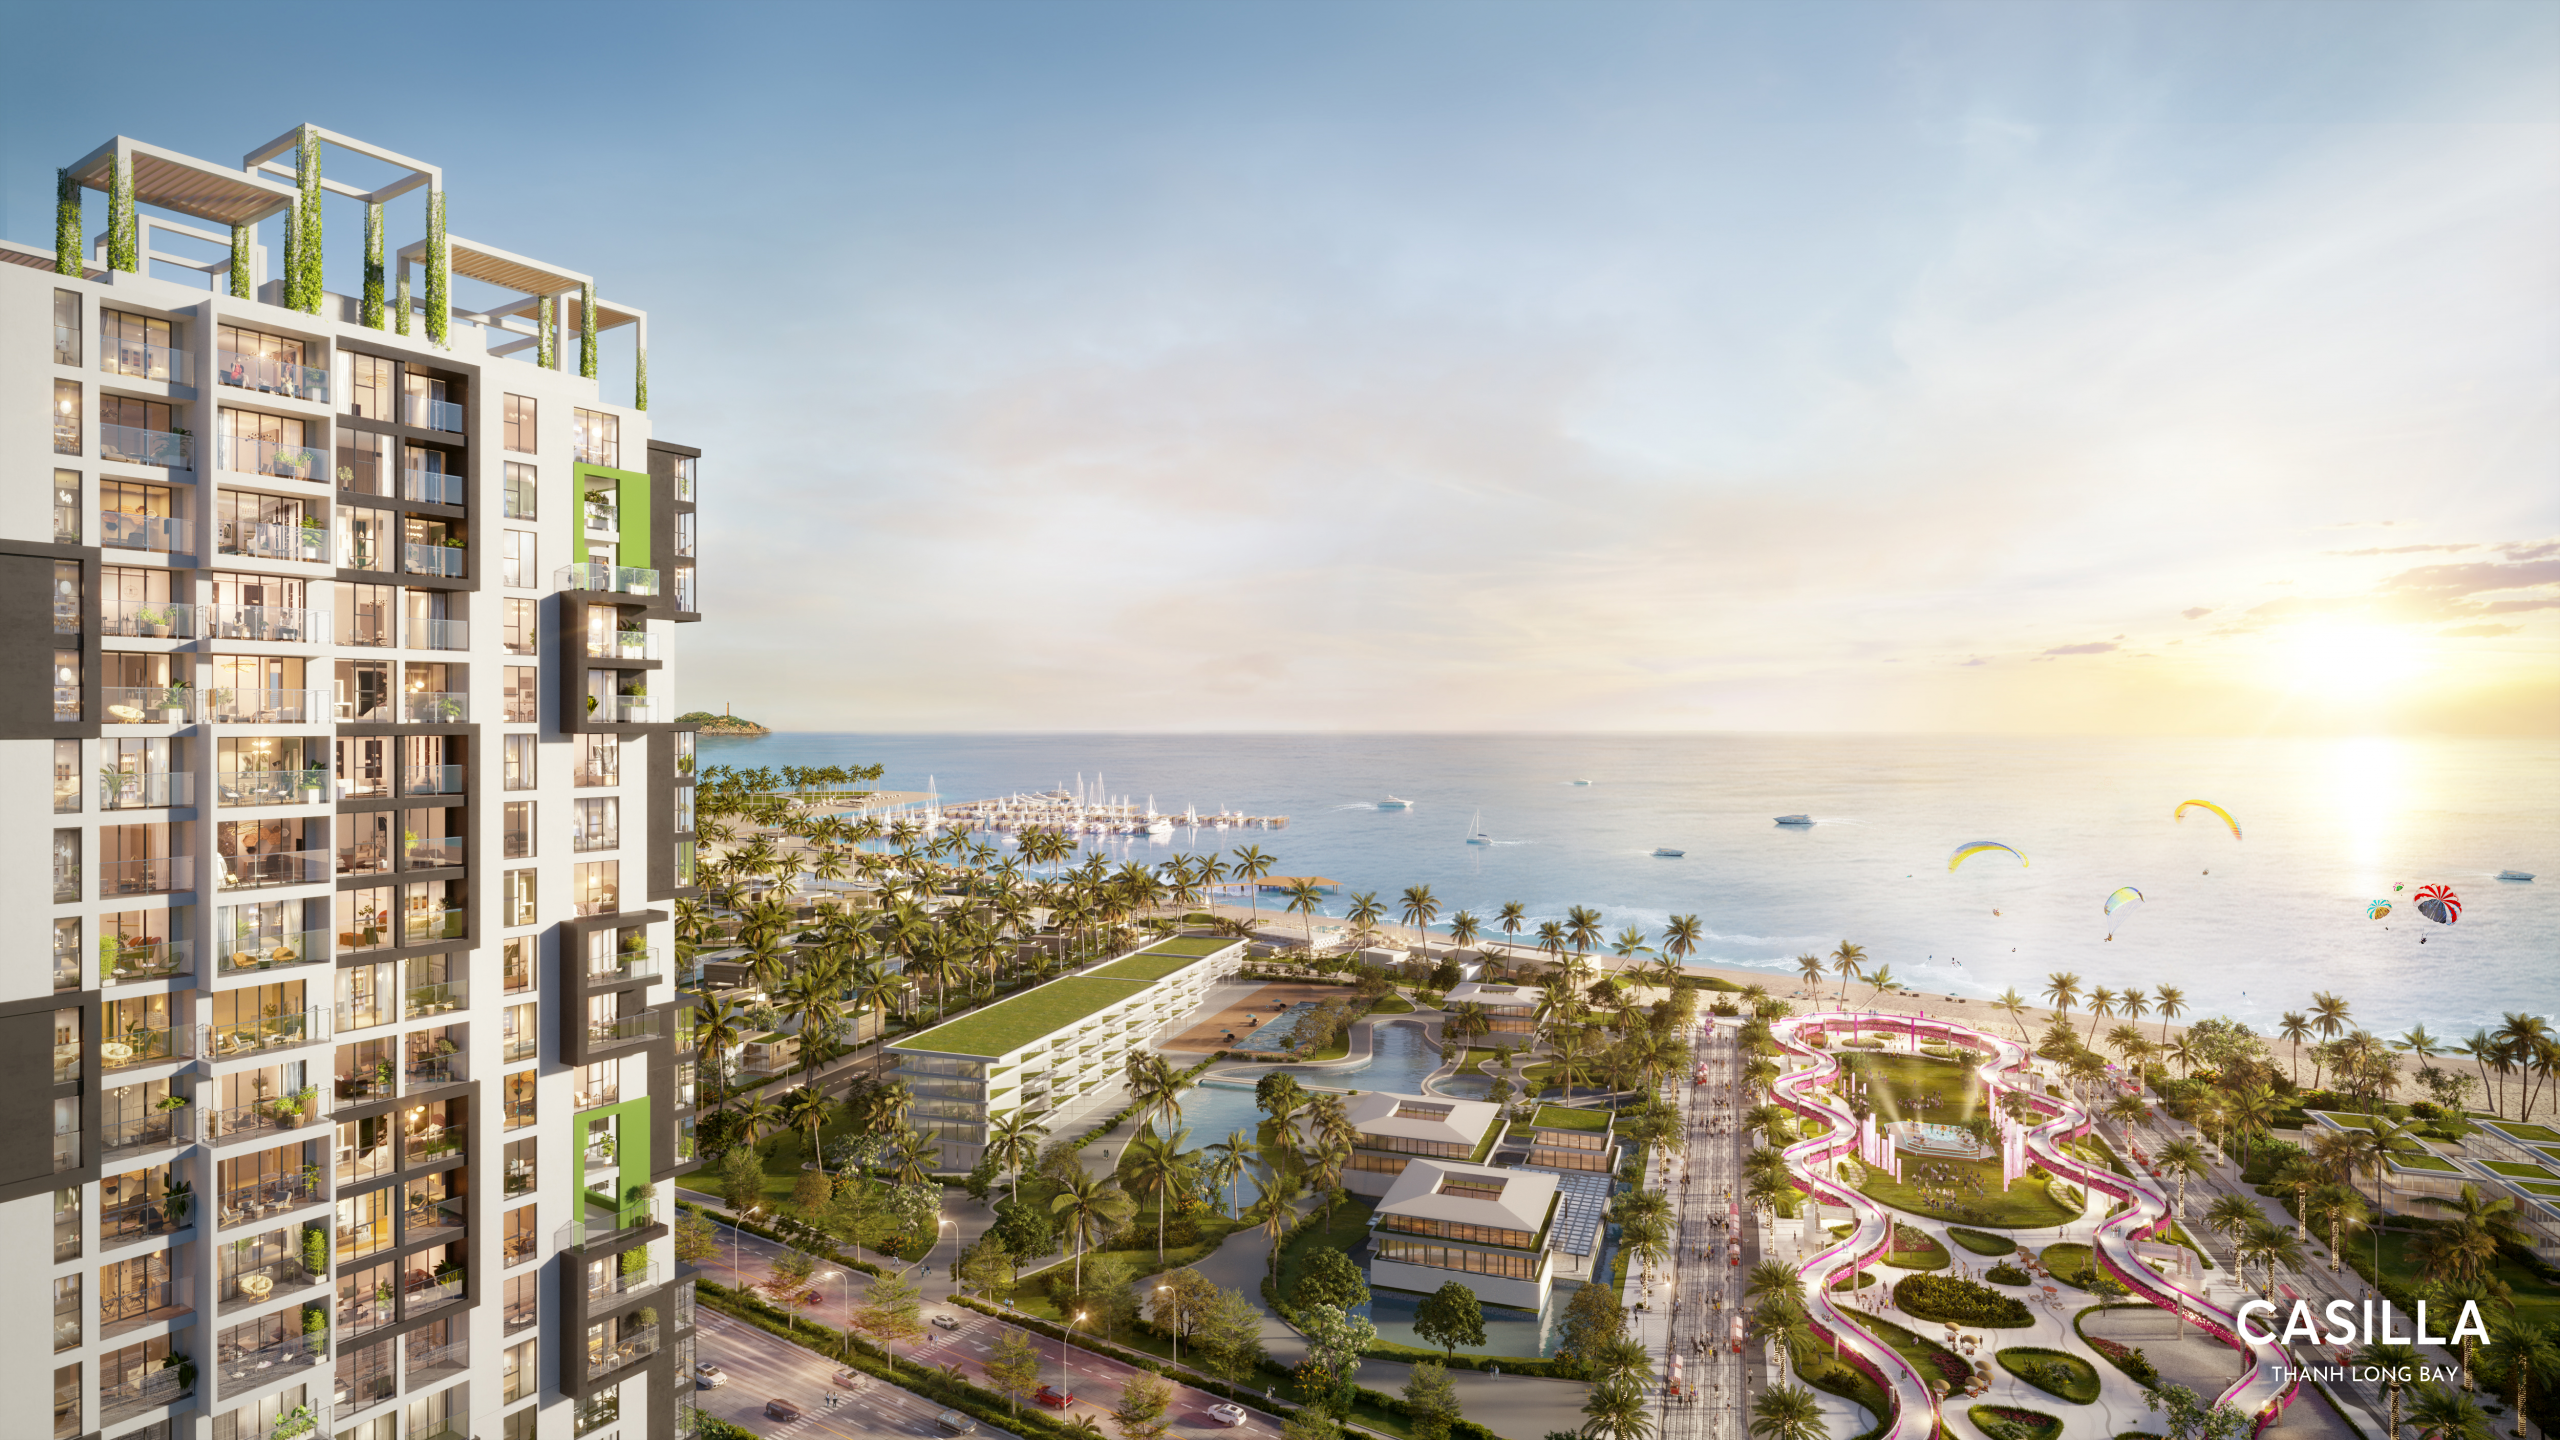 Sở hữu căn hộ biển Casilla – Thanh Long Bay với chỉ từ 192 triệu đồng